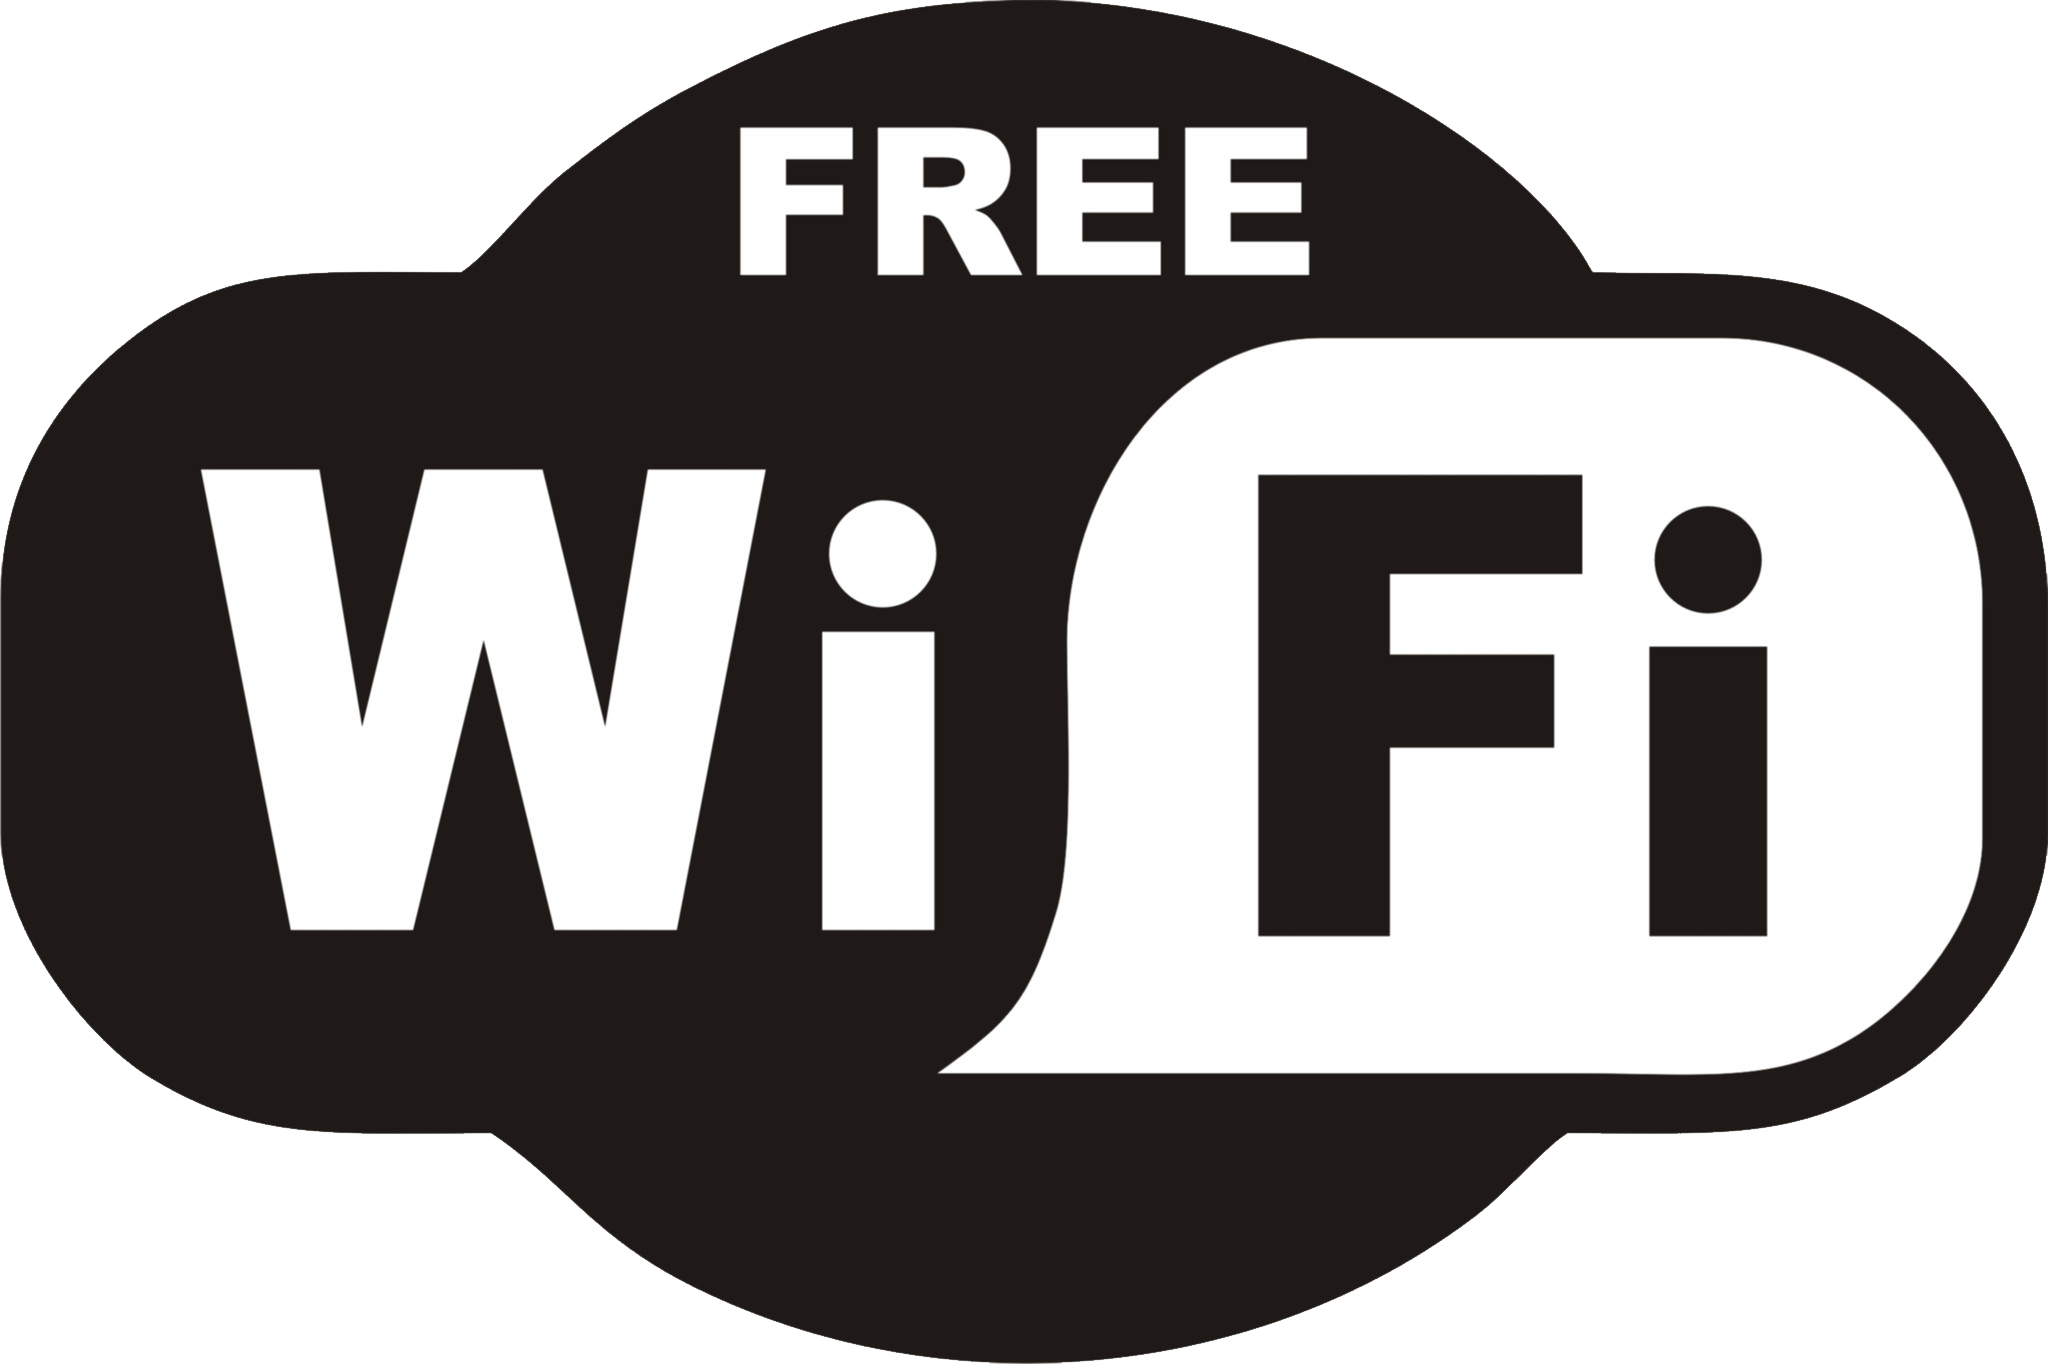 WiFi gratuit GRATUIT PNG HQ Image